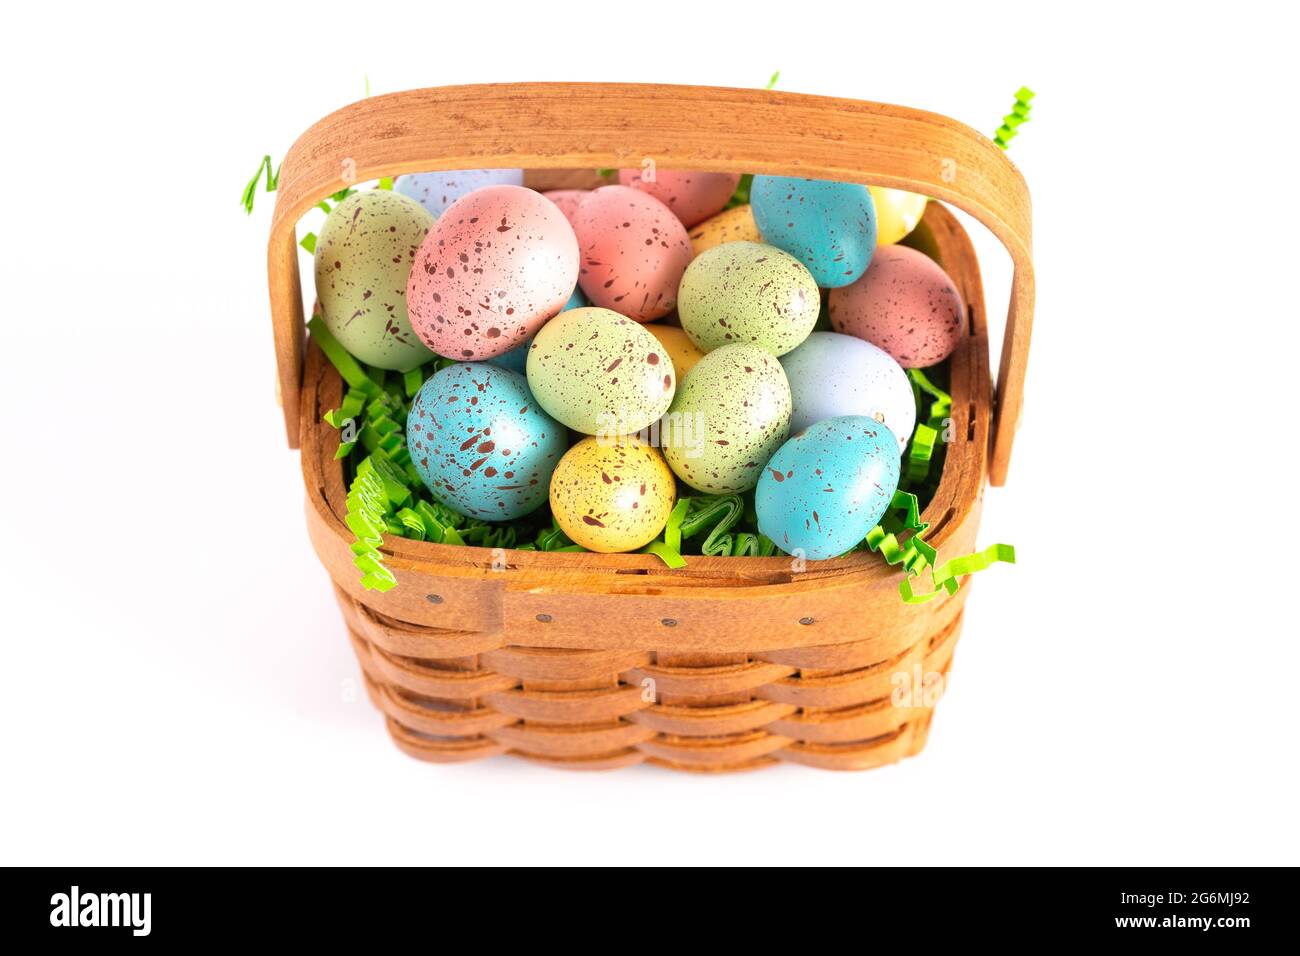 Un panier de Pâques en bois rempli d'œufs décorés isolés sur un fond blanc Banque D'Images